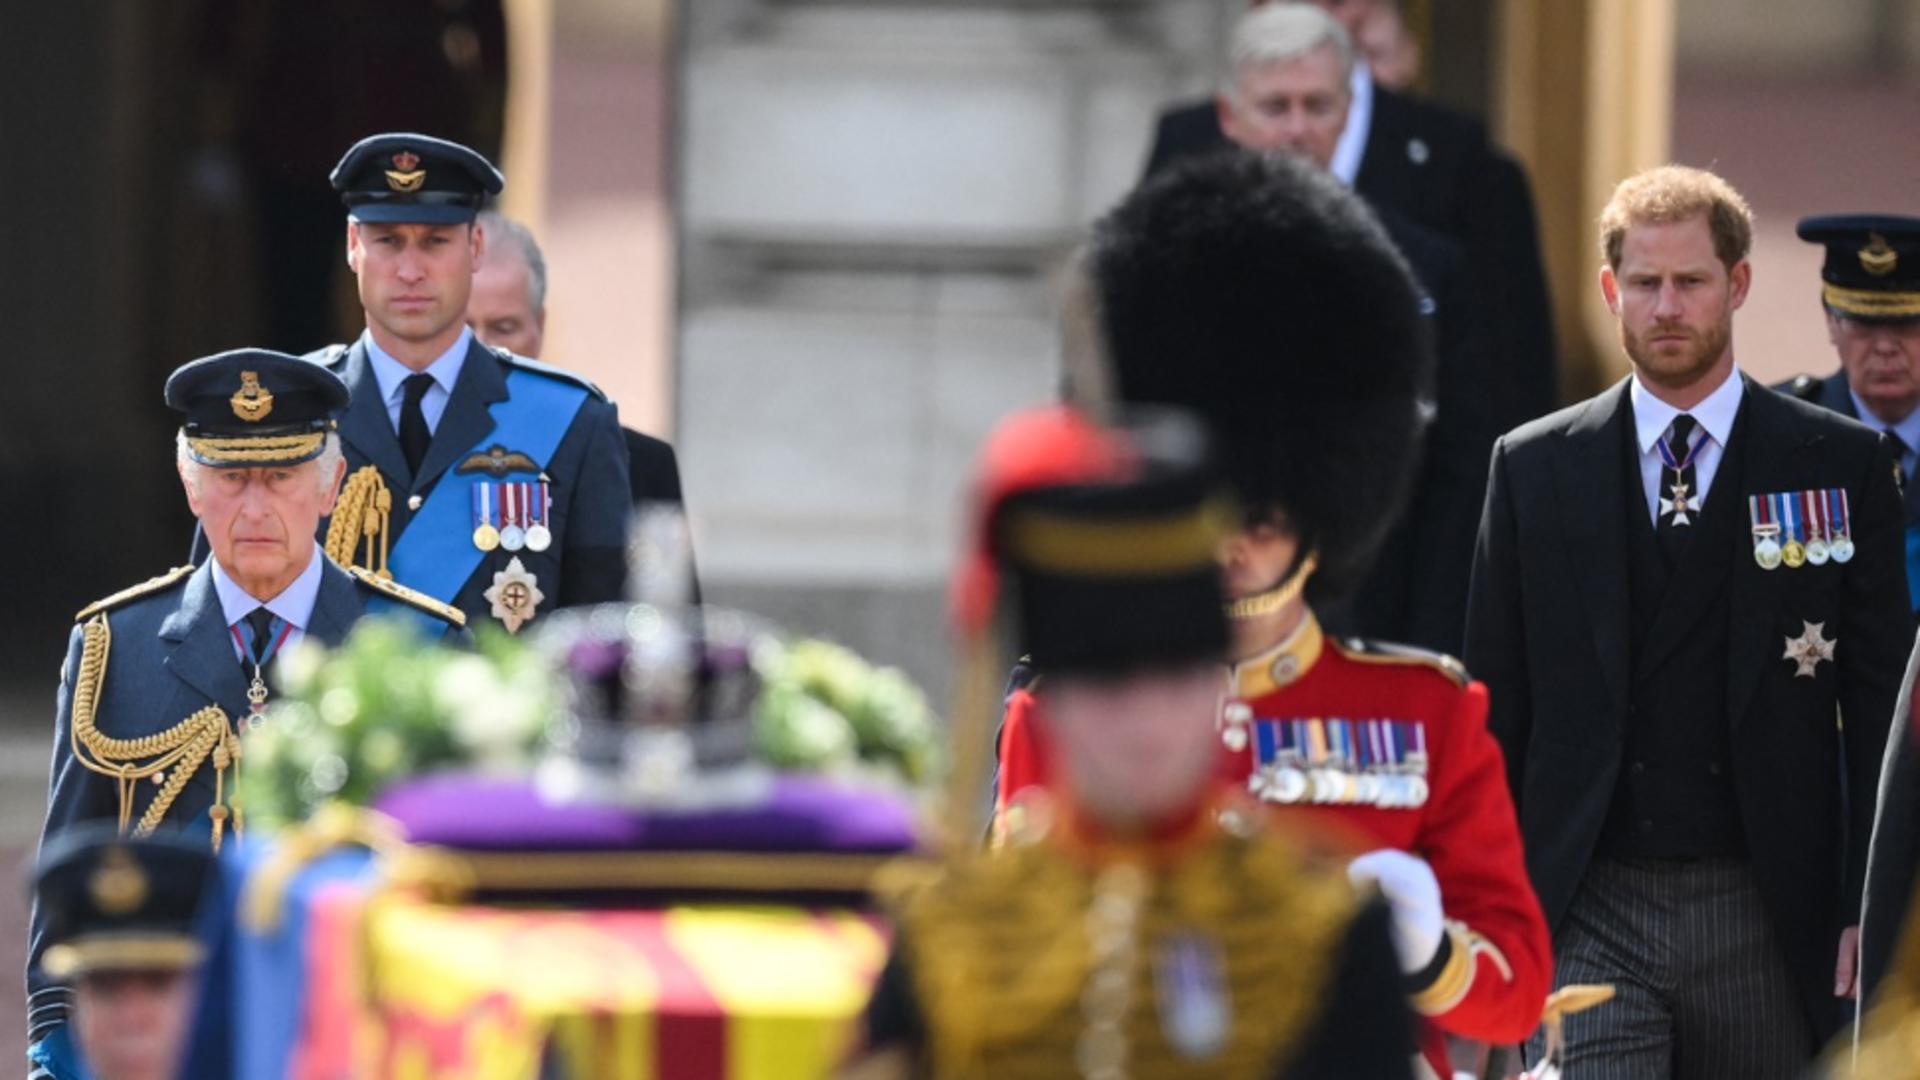 Sicriul Reginei Elisabeta a II-a a ajuns la Palatul Westminster din Londra - Imagini impresionante de la procesiune